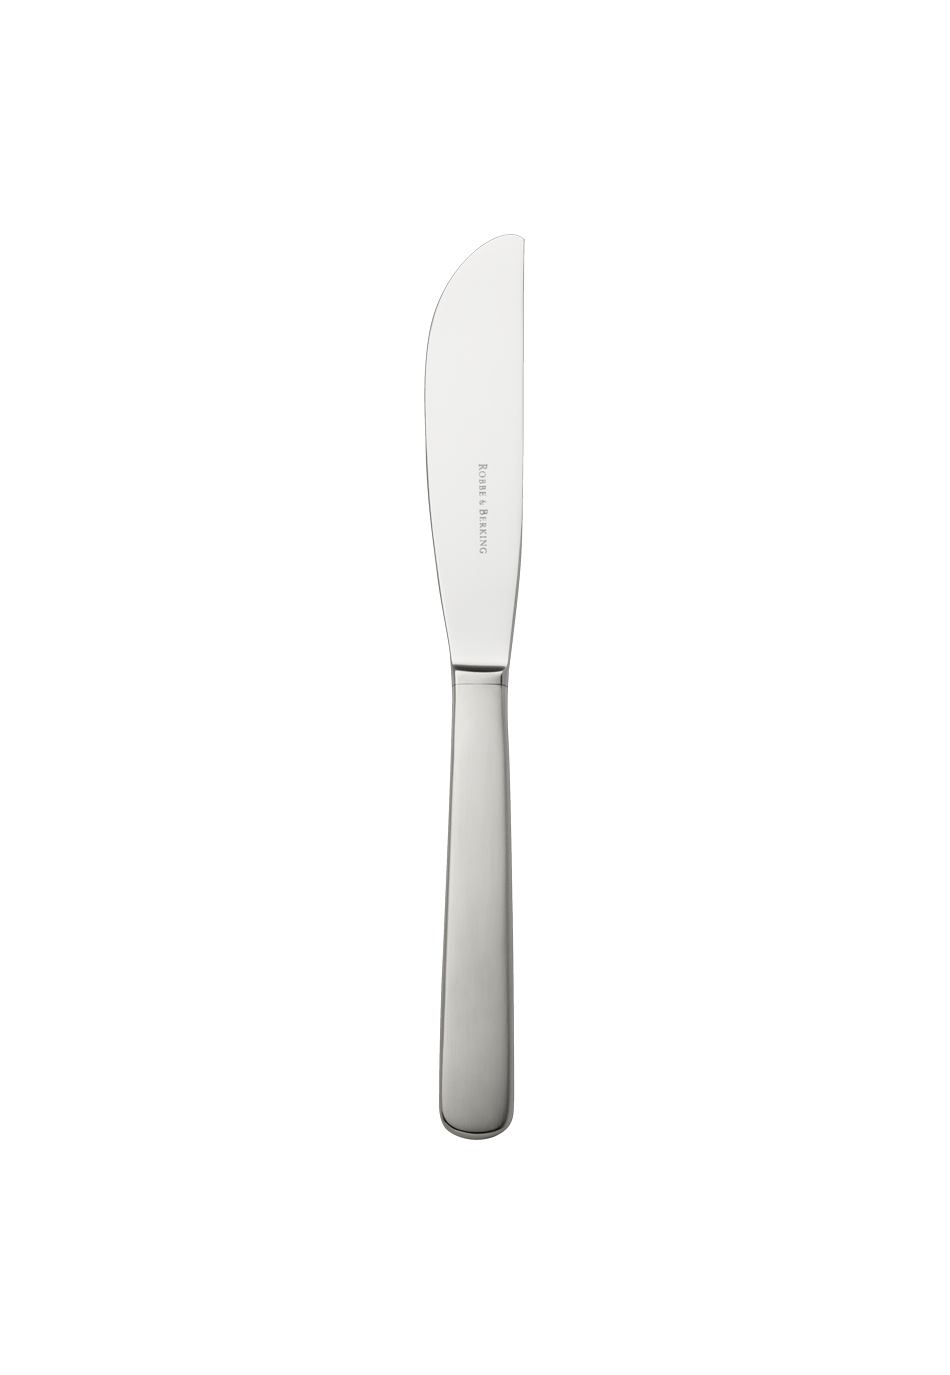 Atlantic Dessert Knife (18/8 stainless steel)